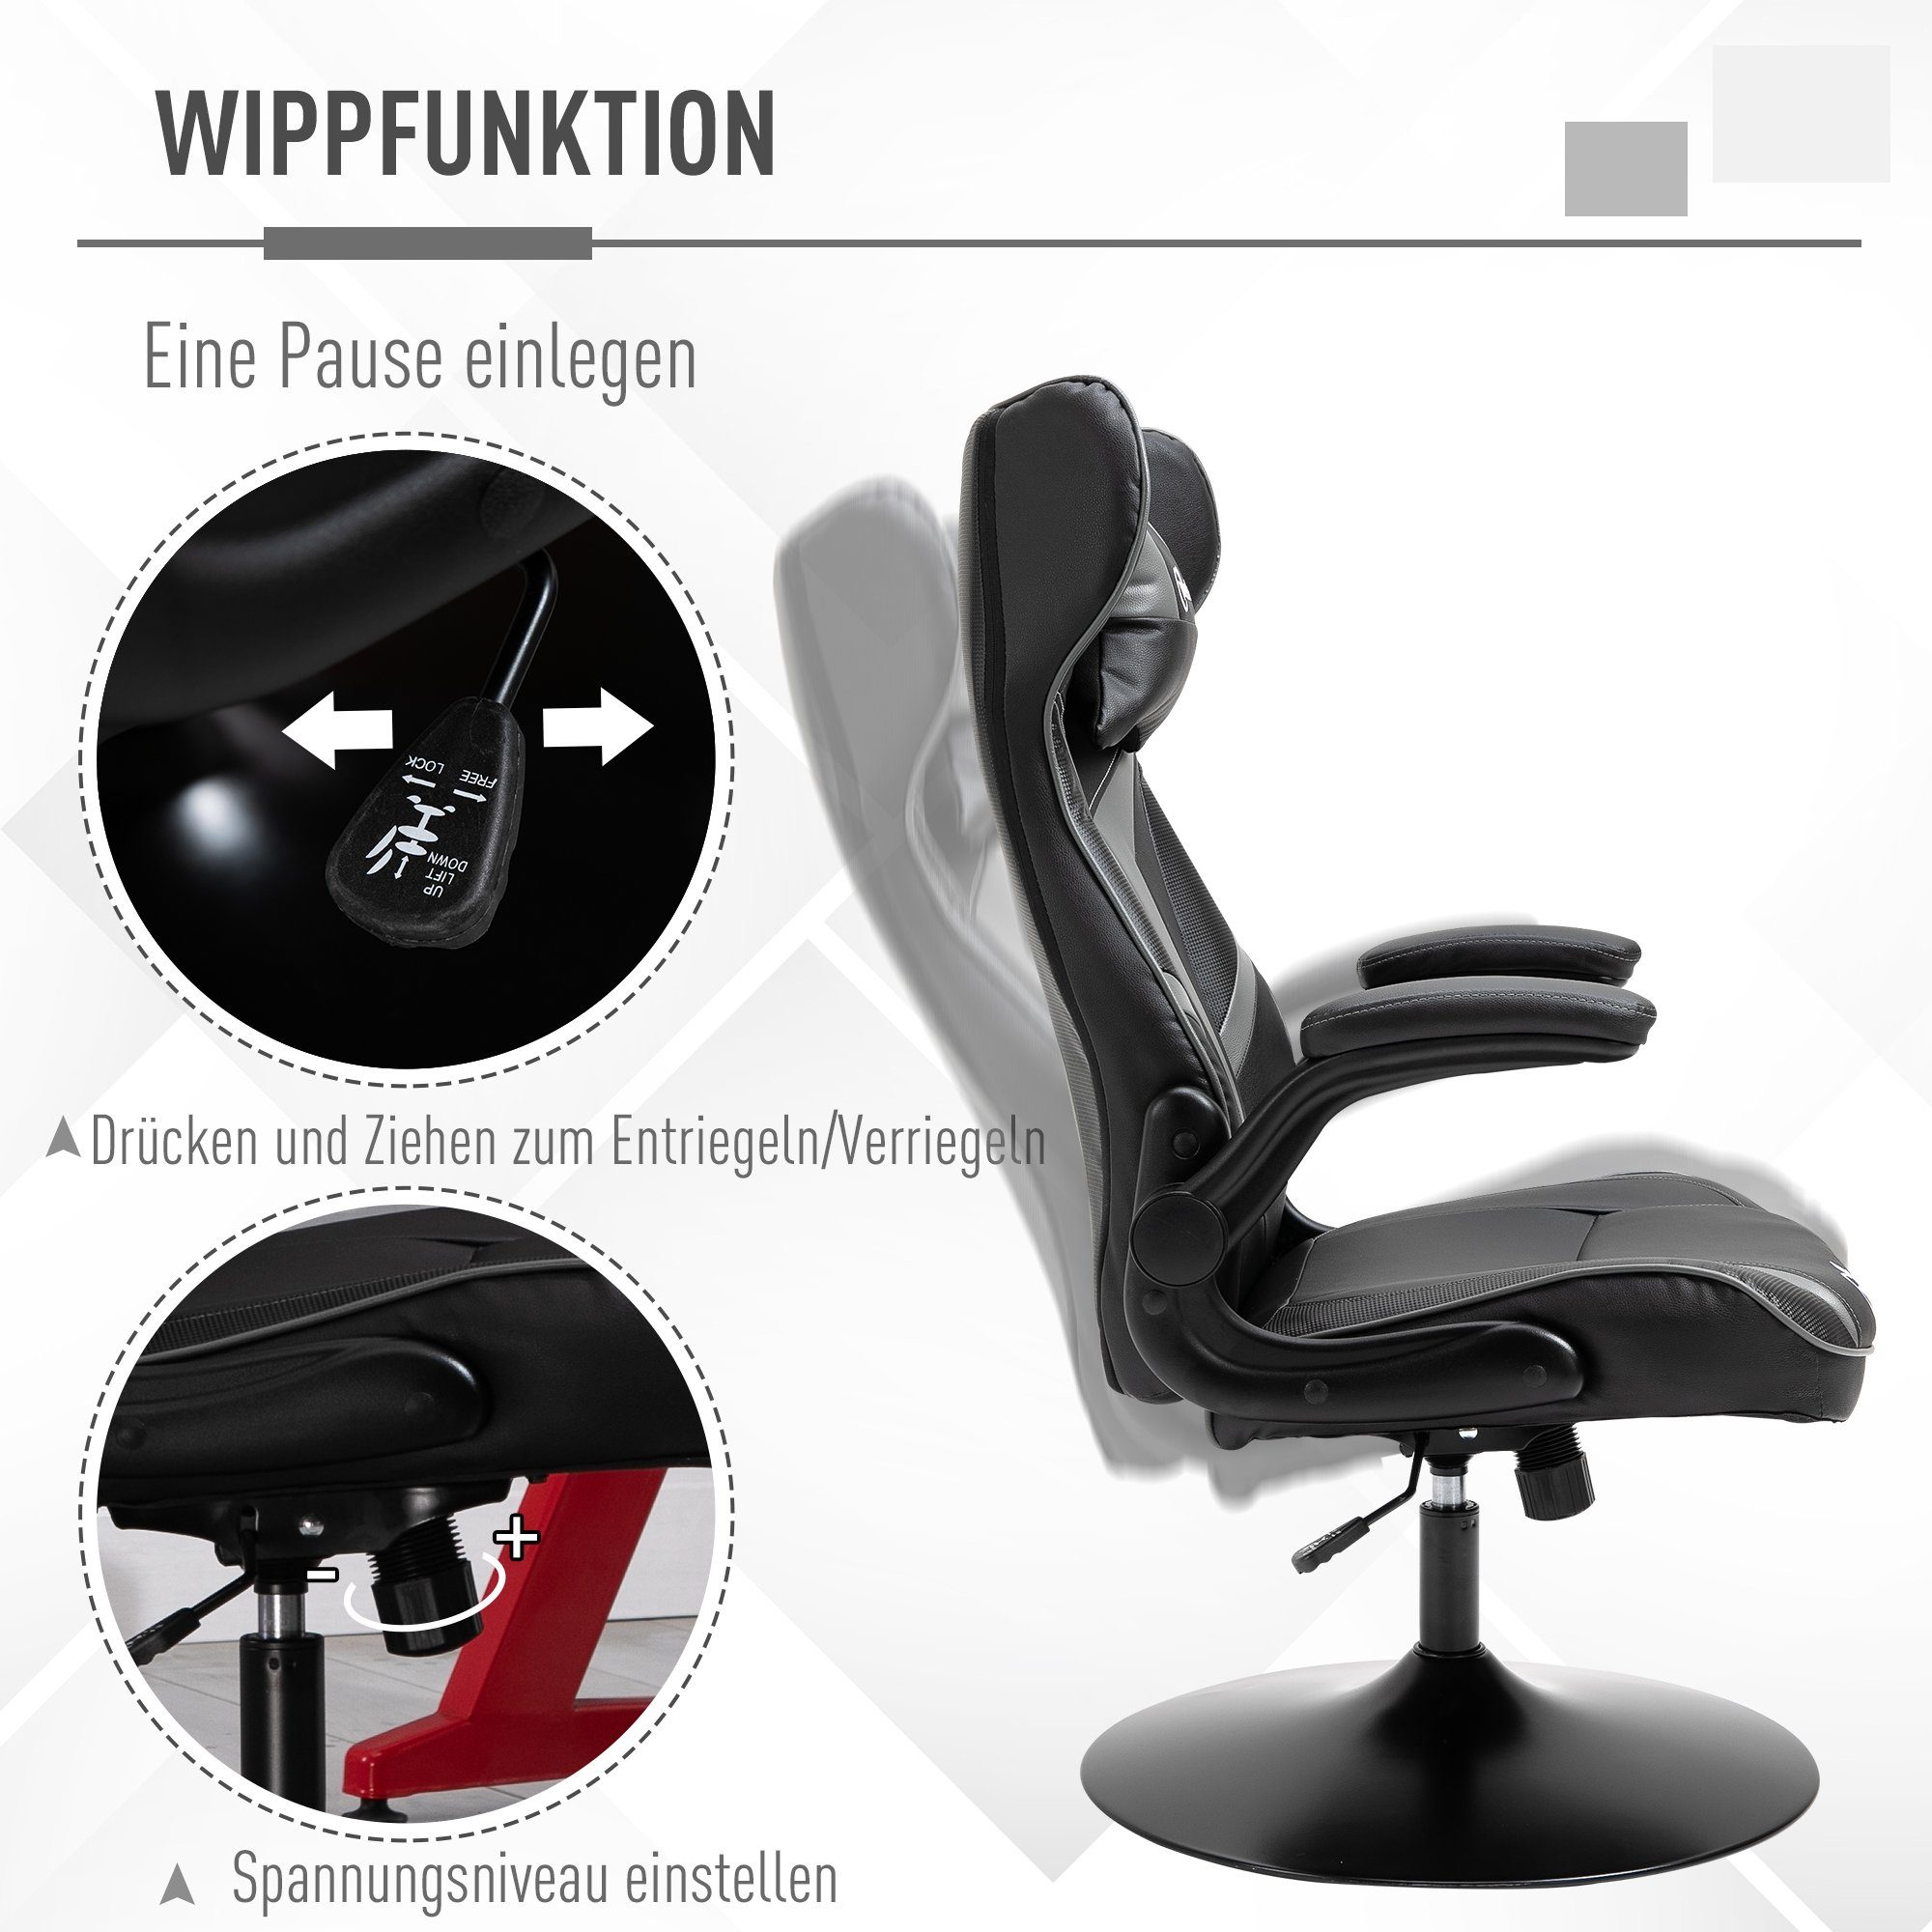 Vinsetto Schreibtischstuhl Gaming Stuhl ergonomisch schwarz/grau | schwarz/grau